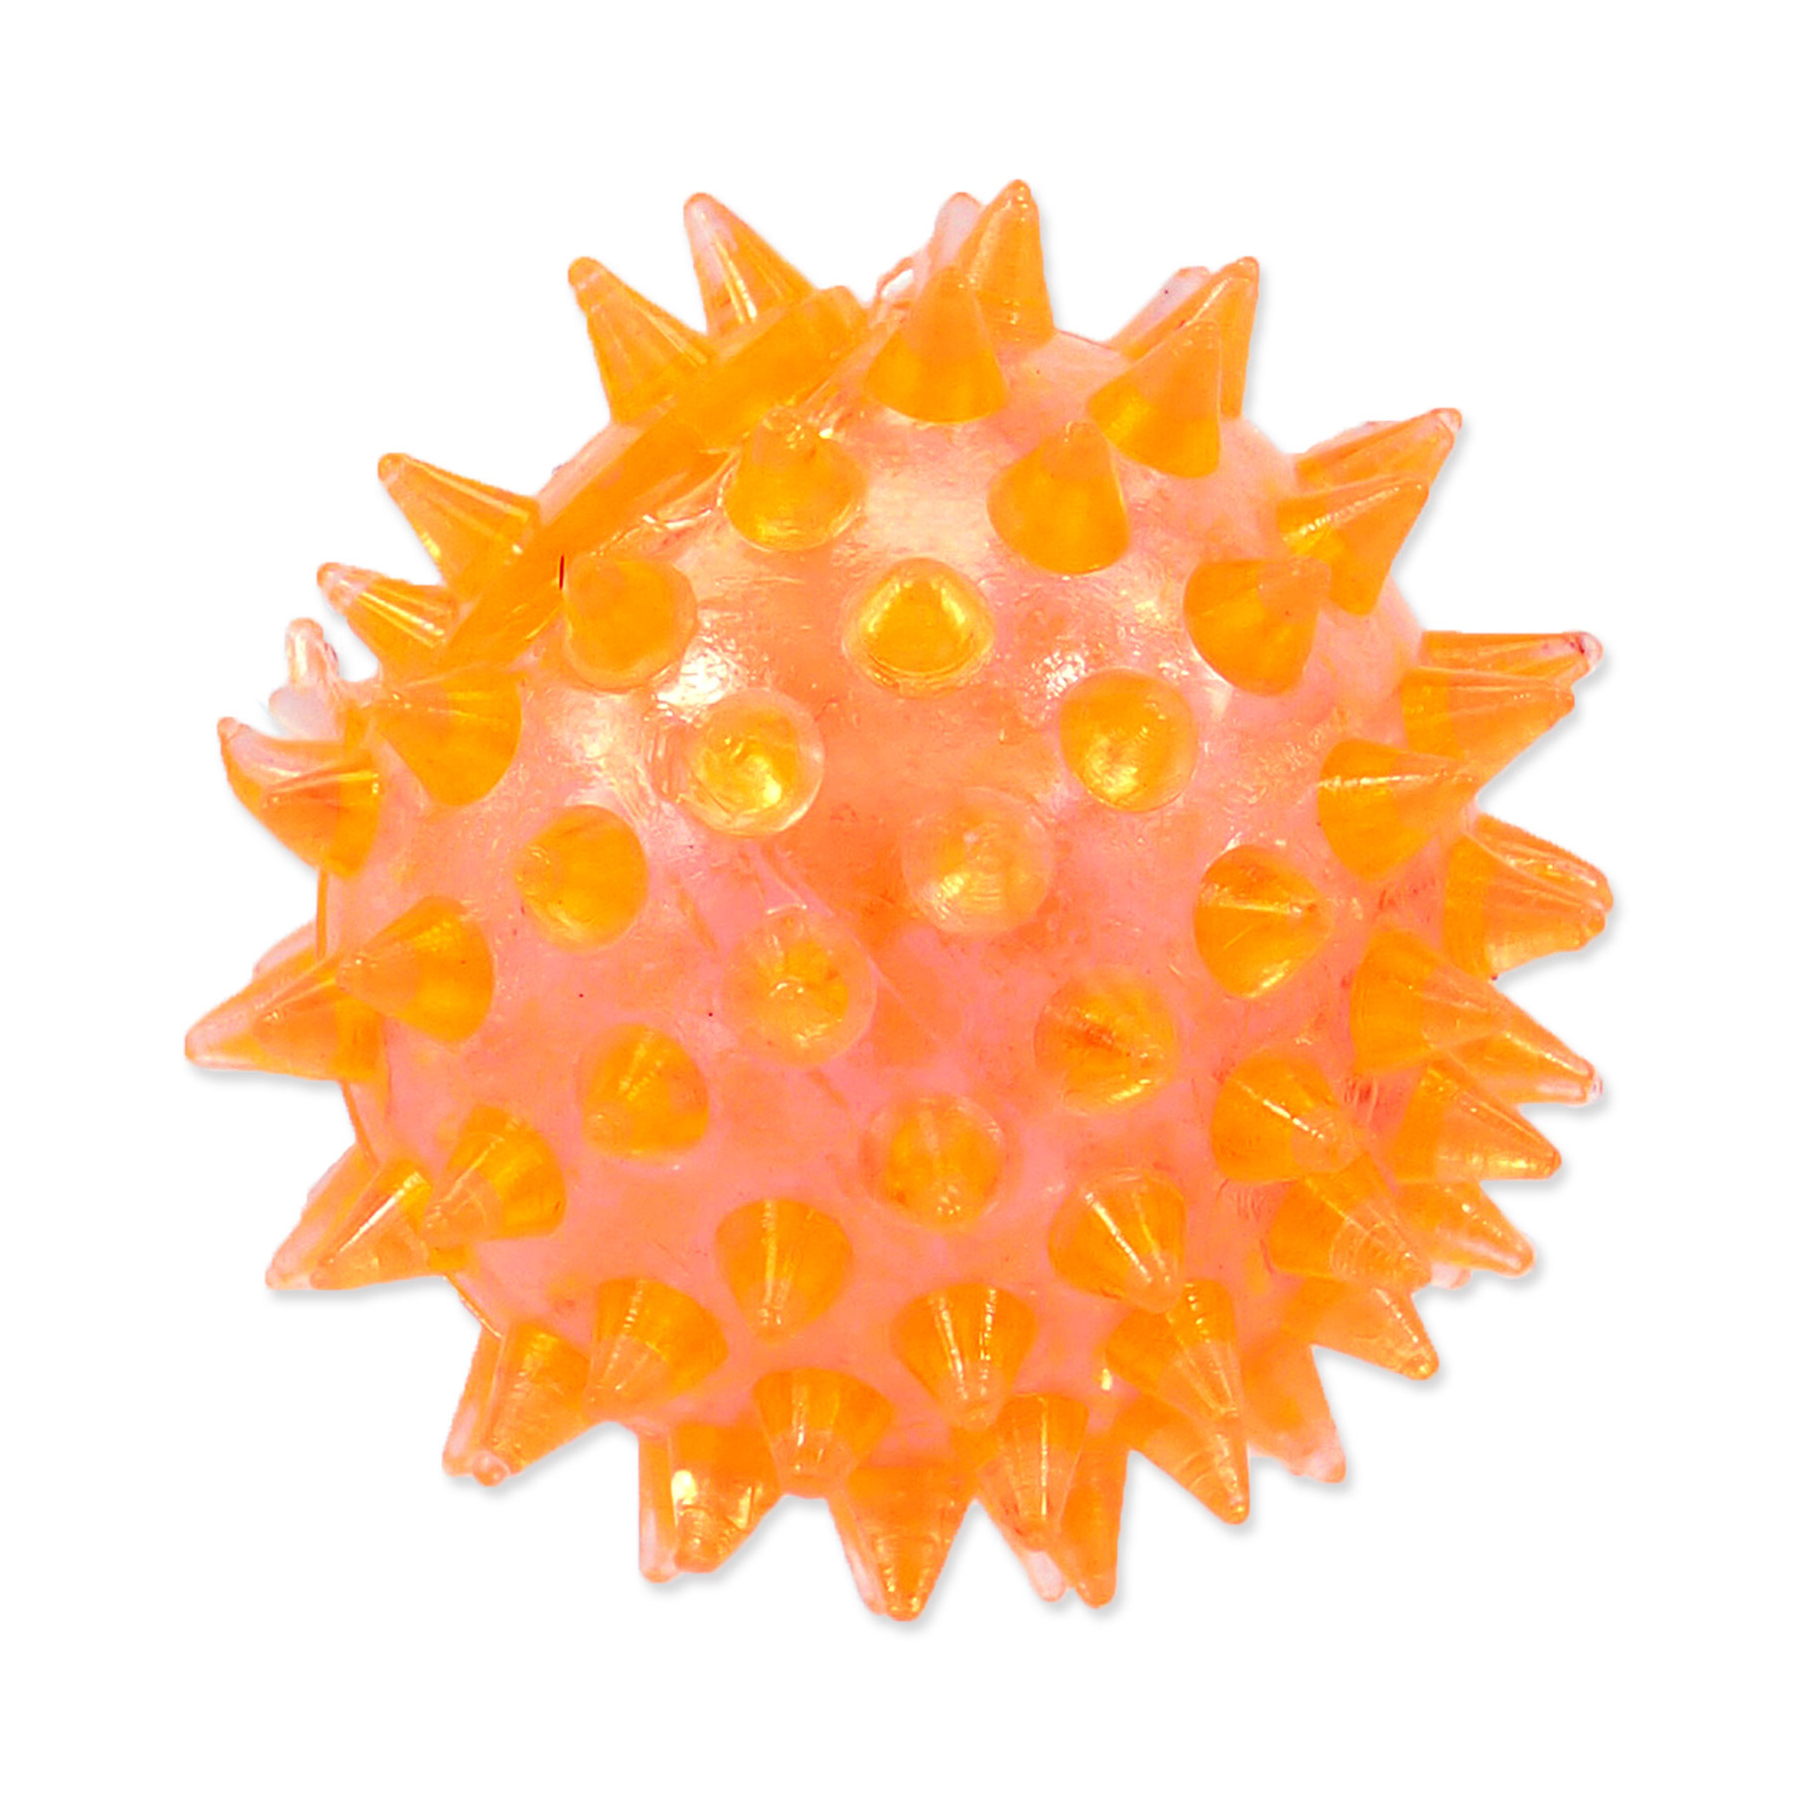 Dog Fantasy Hračka míček pískací oranžový 5 cm Dog Fantasy